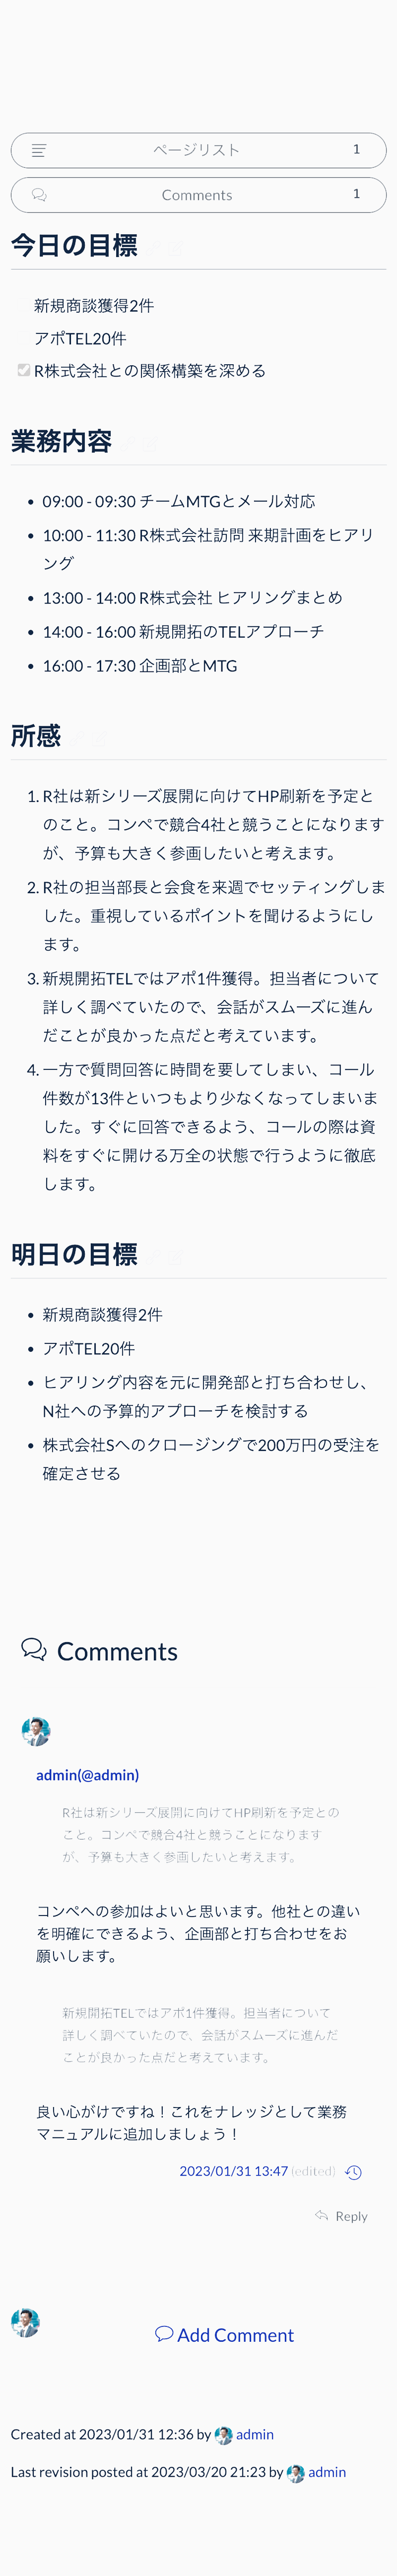 日報_page